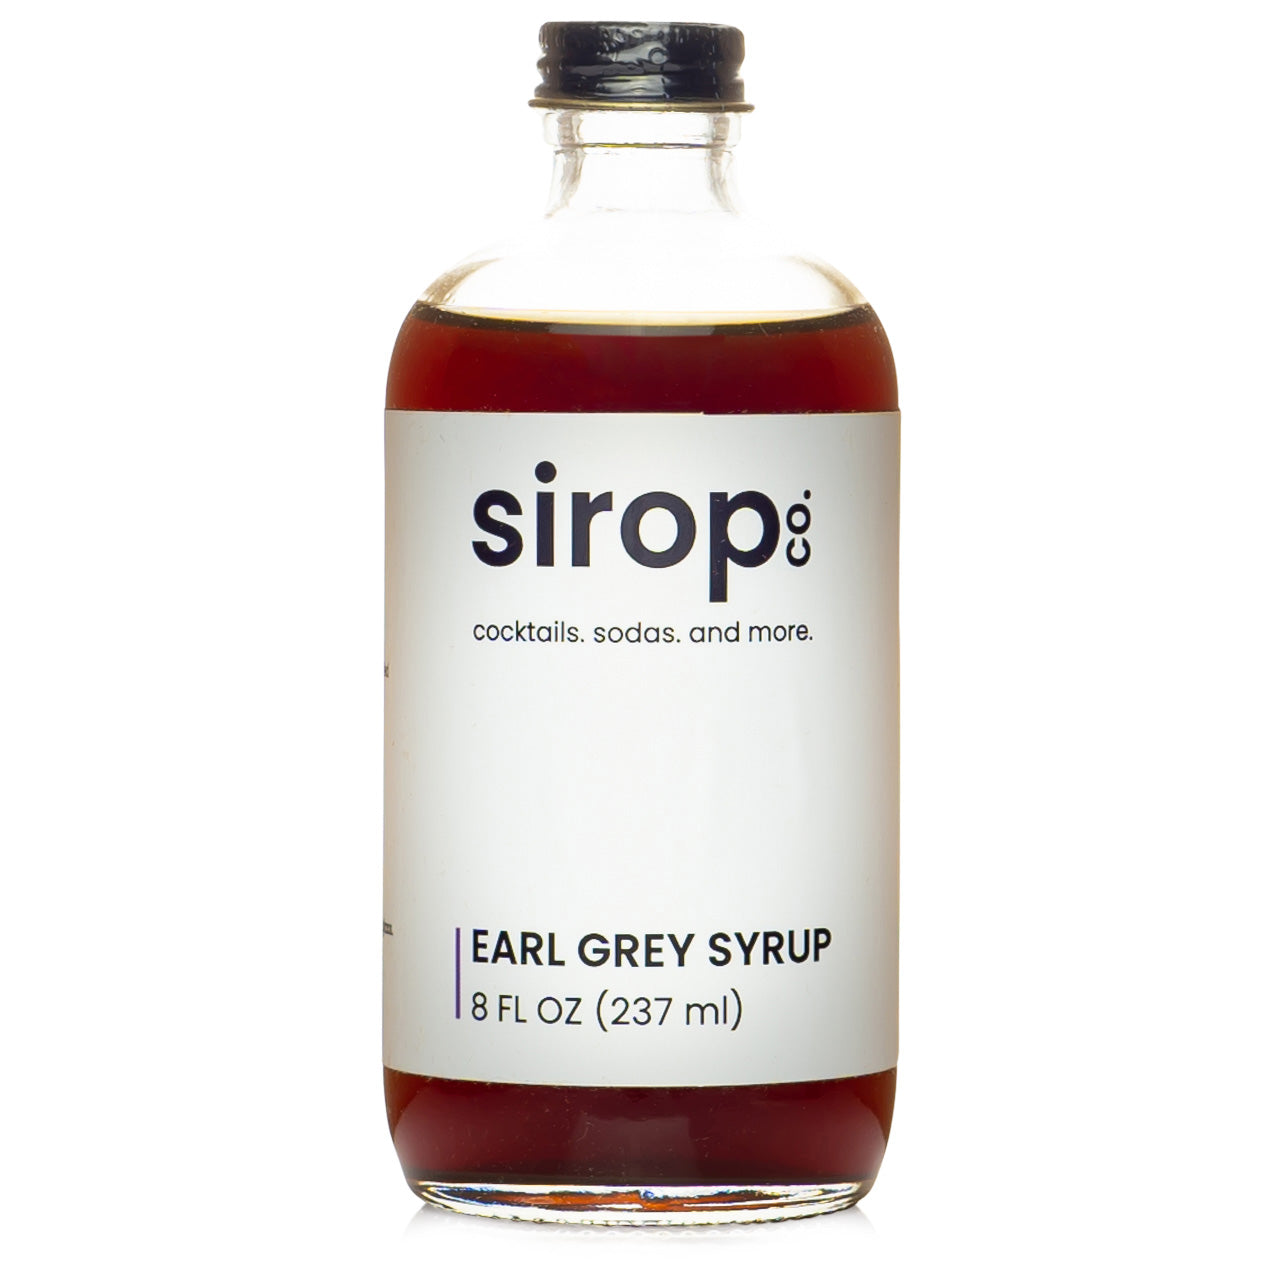 Sirop Co Earl Grey Syrup